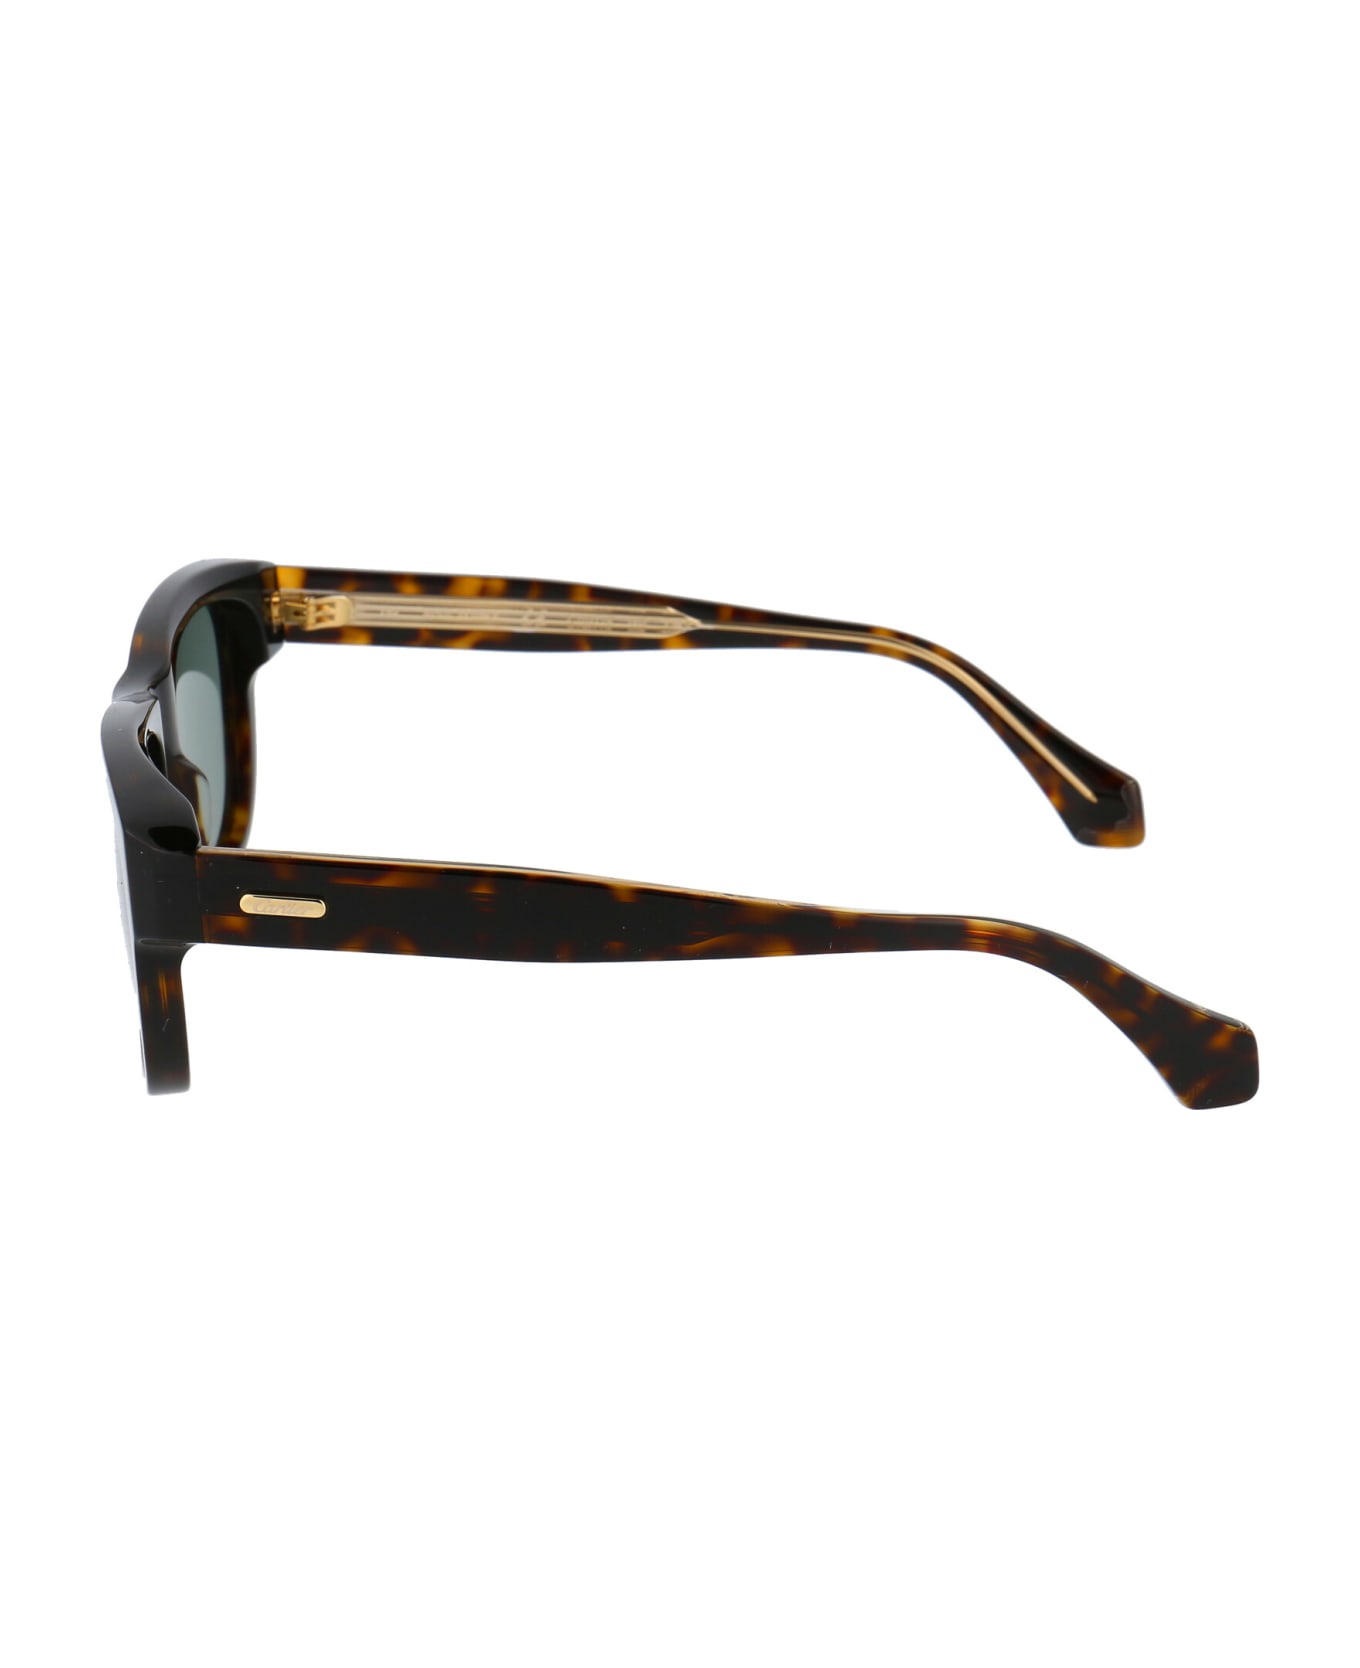 Cartier Eyewear Ct0277s Sunglasses - 002 HAVANA HAVANA GREEN